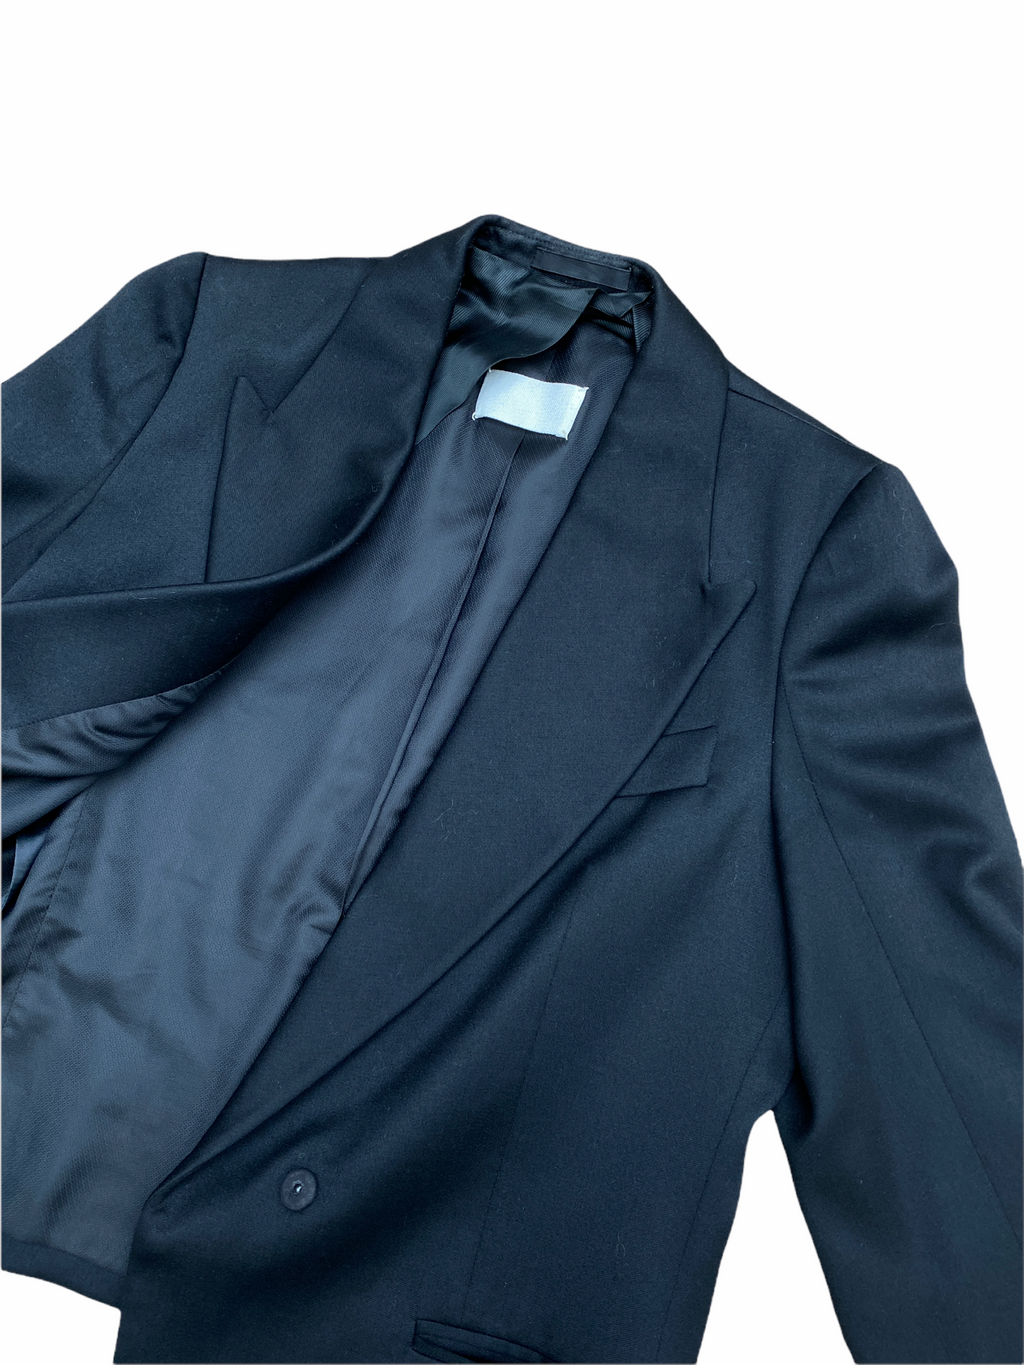 F/W 2002 Black Wool Tuxedo Blazer Jacket